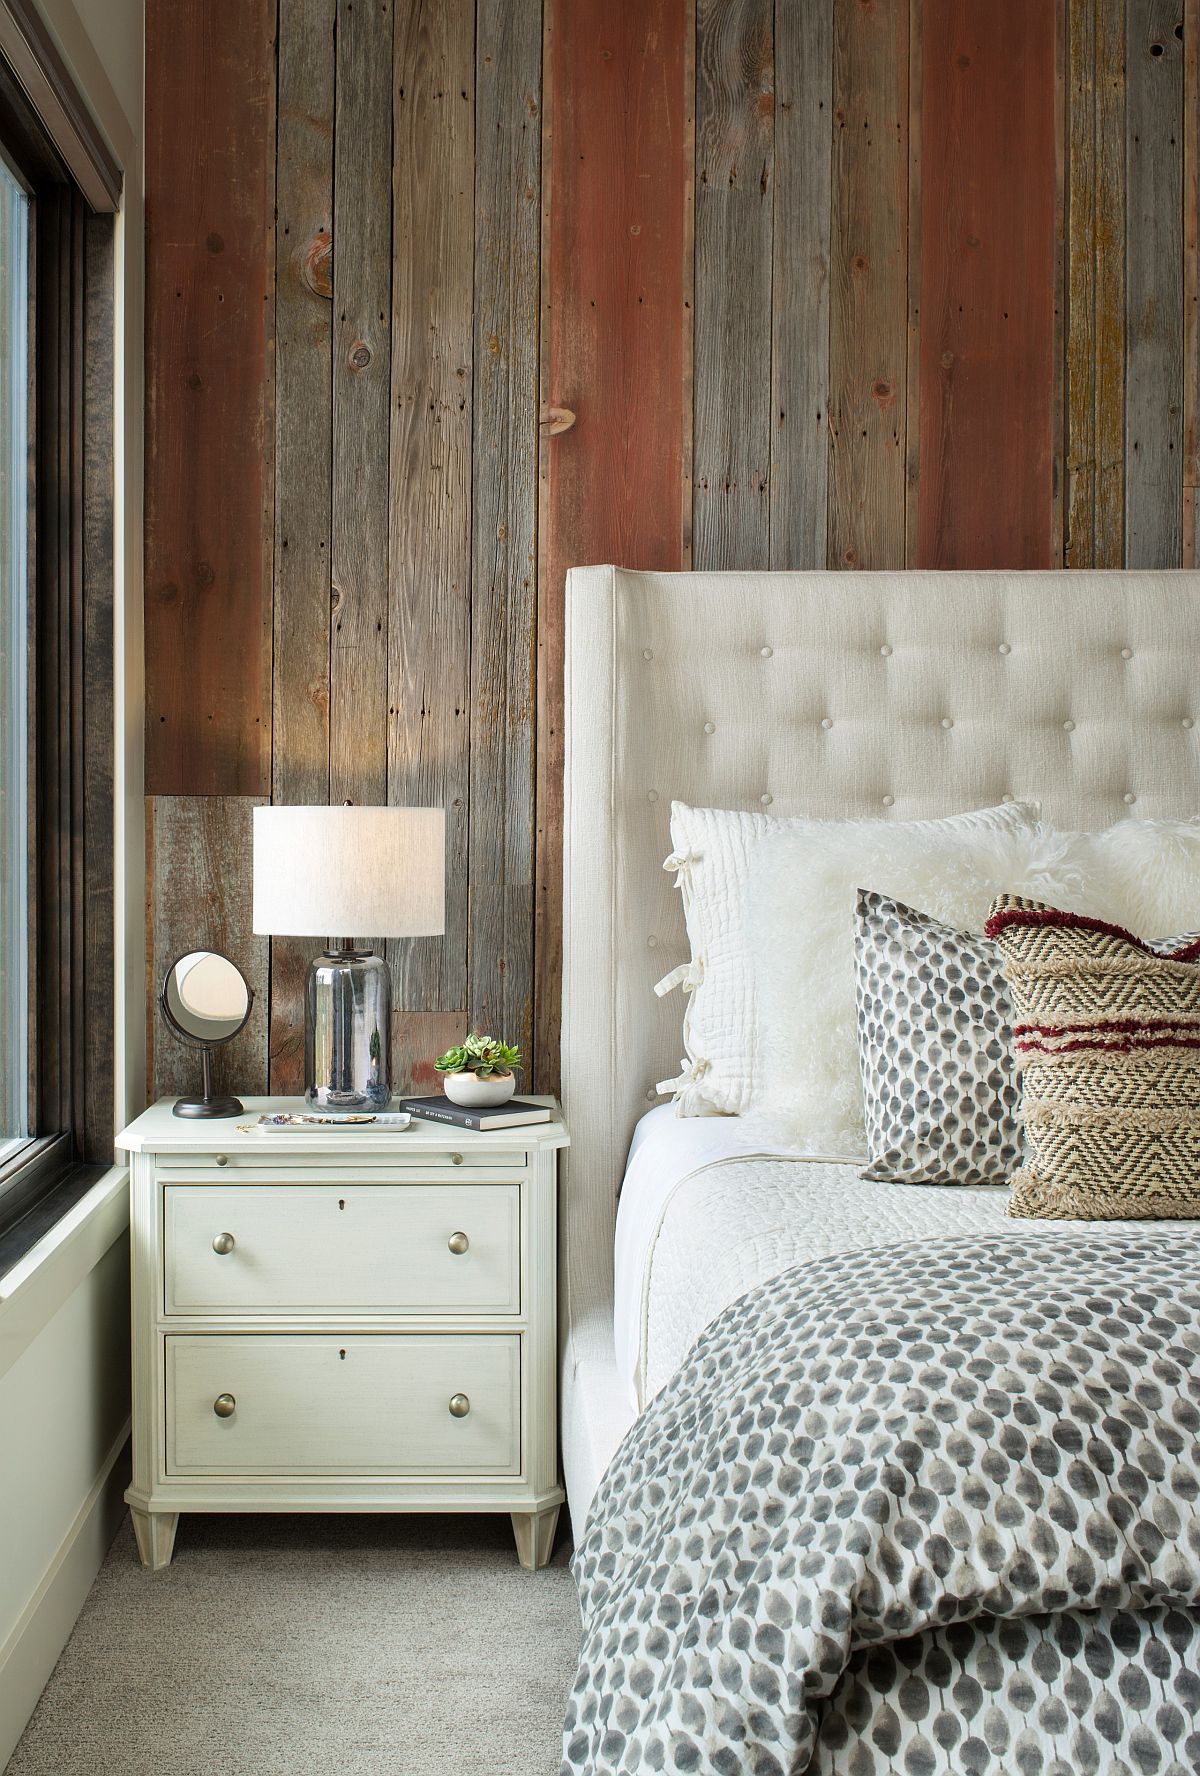 Bức tường ở khu vực đầu giường được trang trí bằng những thanh gỗ nhiều màu sắc đậm nhạt xen kẽ bắt mắt.